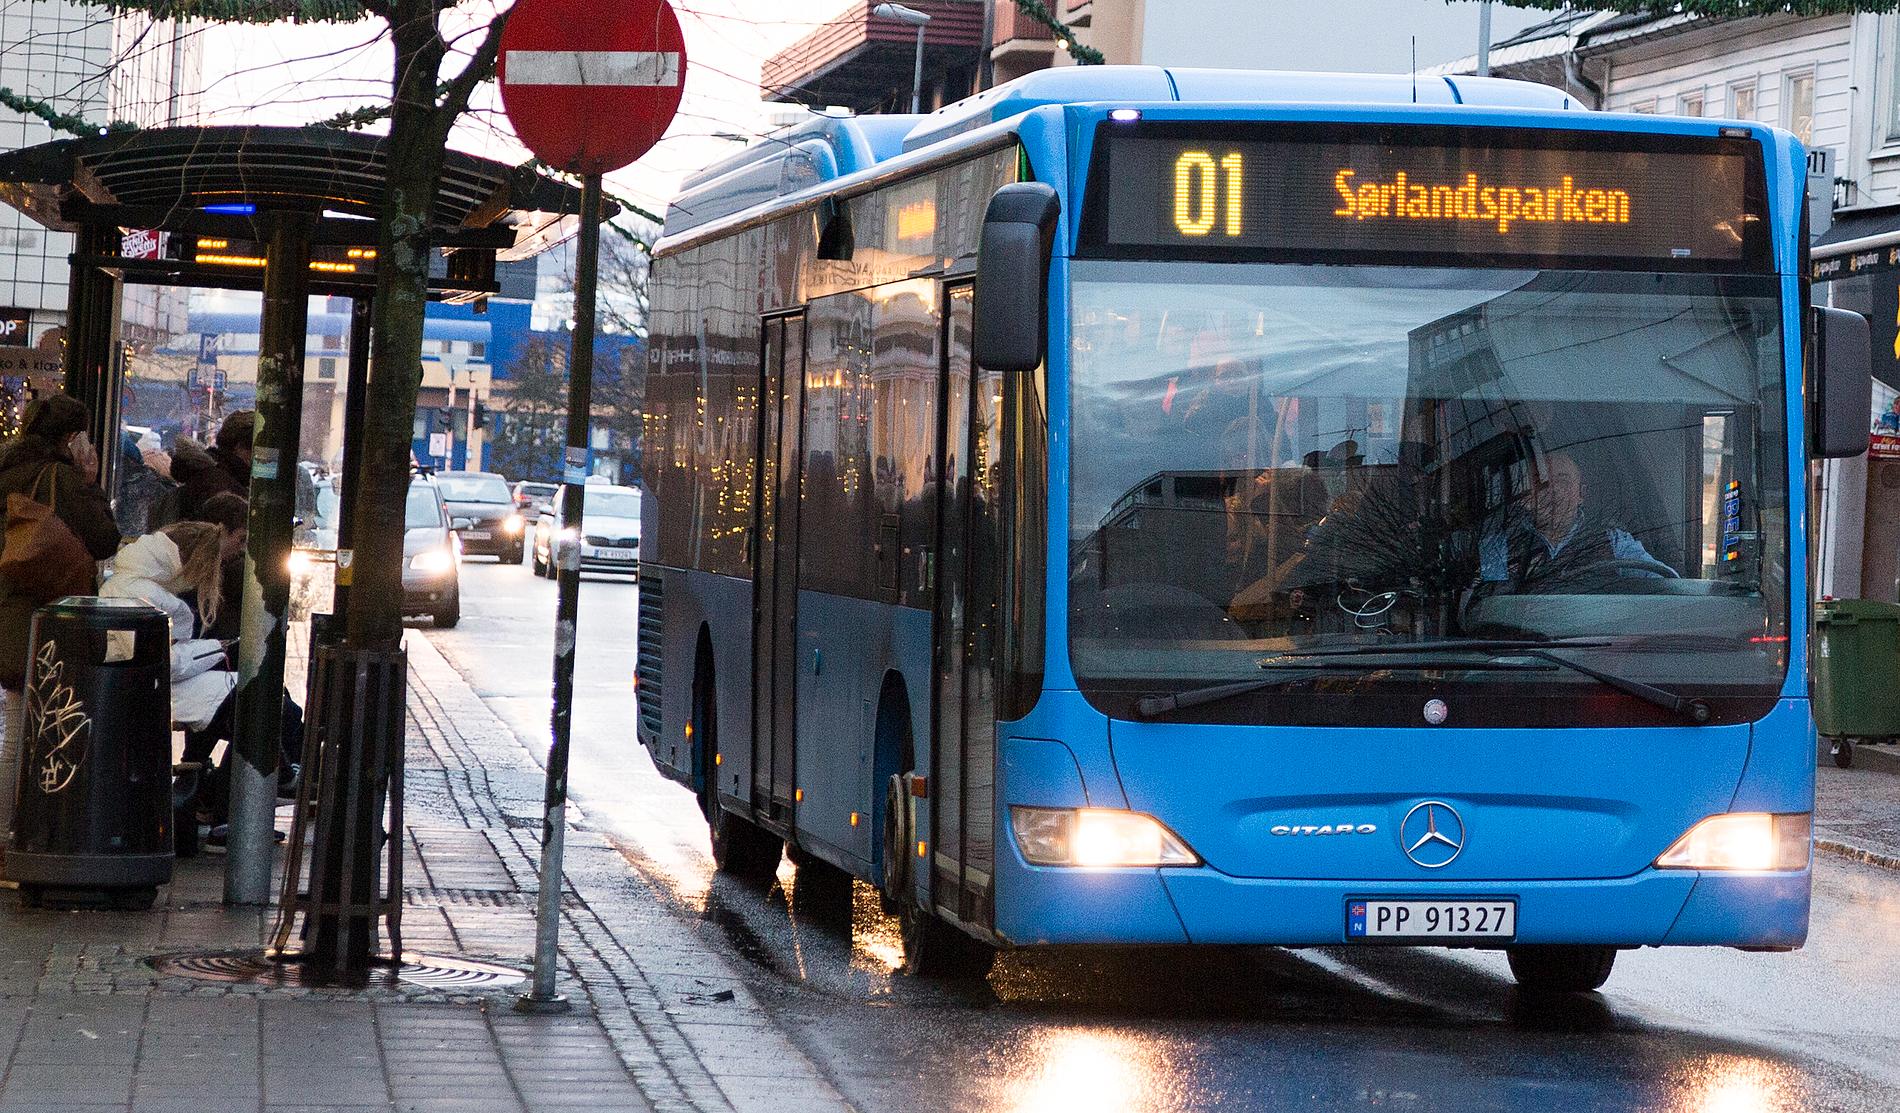 01-bussen er snart historie. Fra 2. januar blir det 105 avganger på M1.